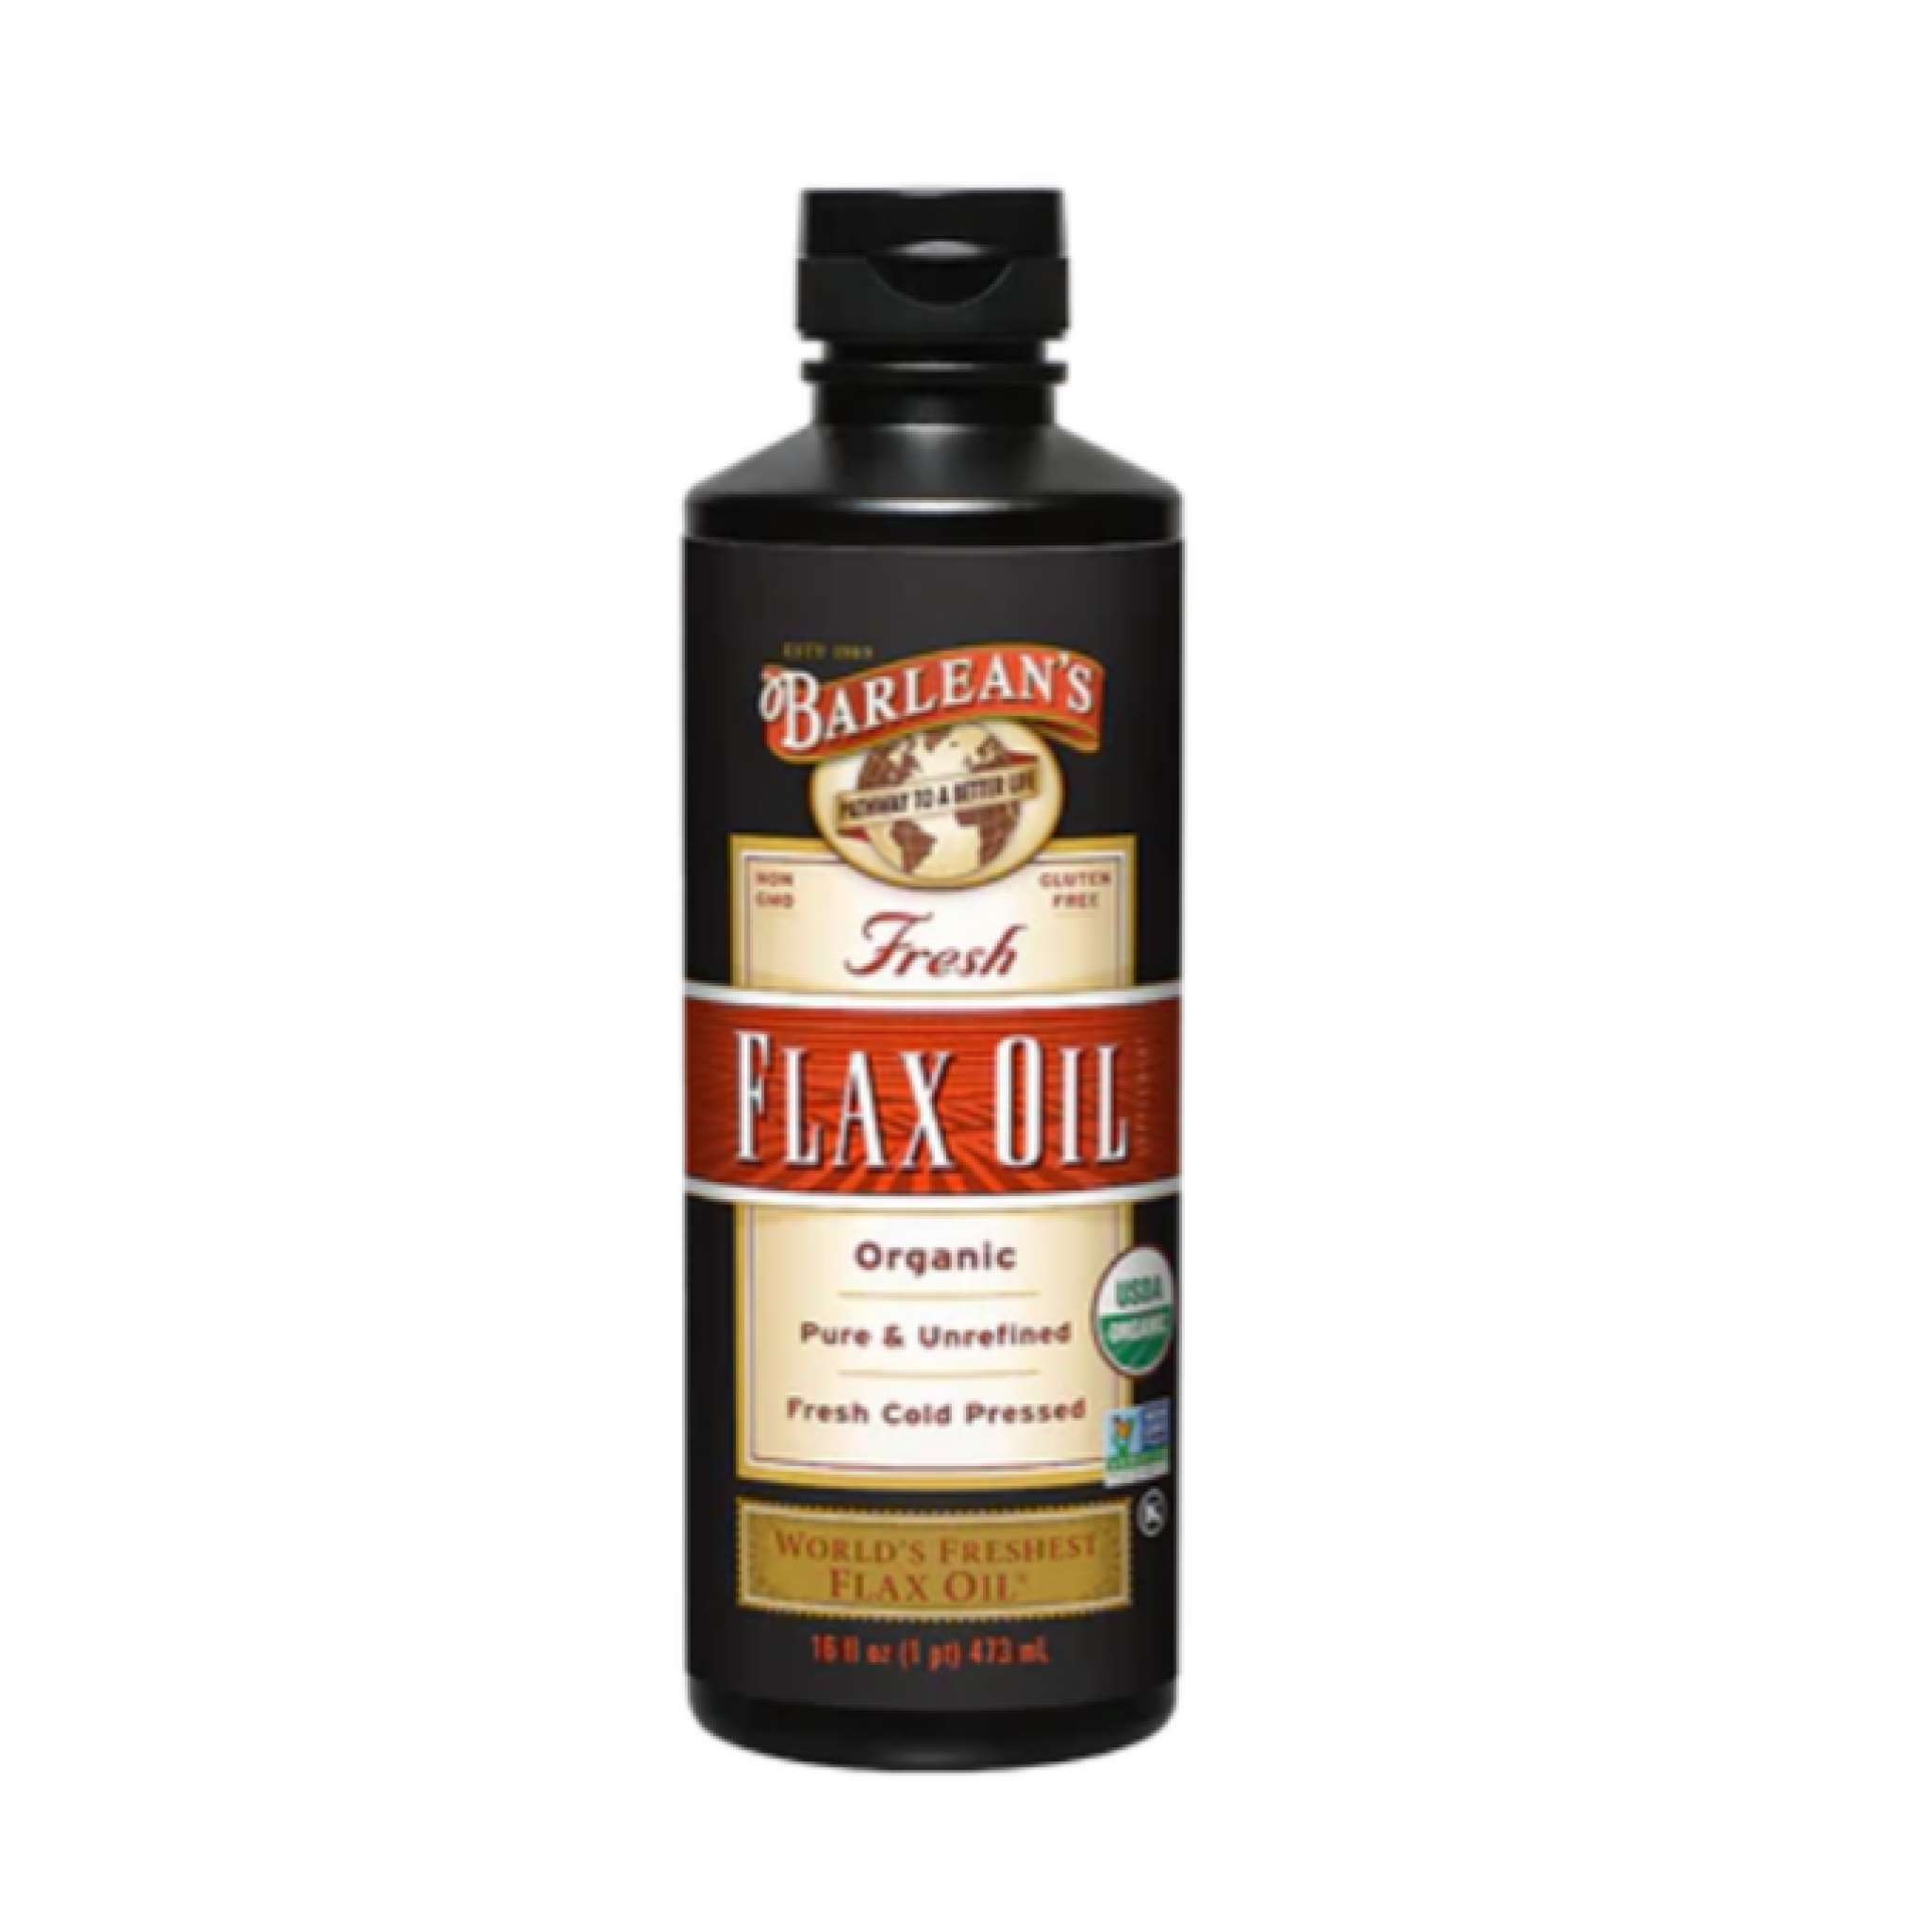 Barleans - Flax Oil